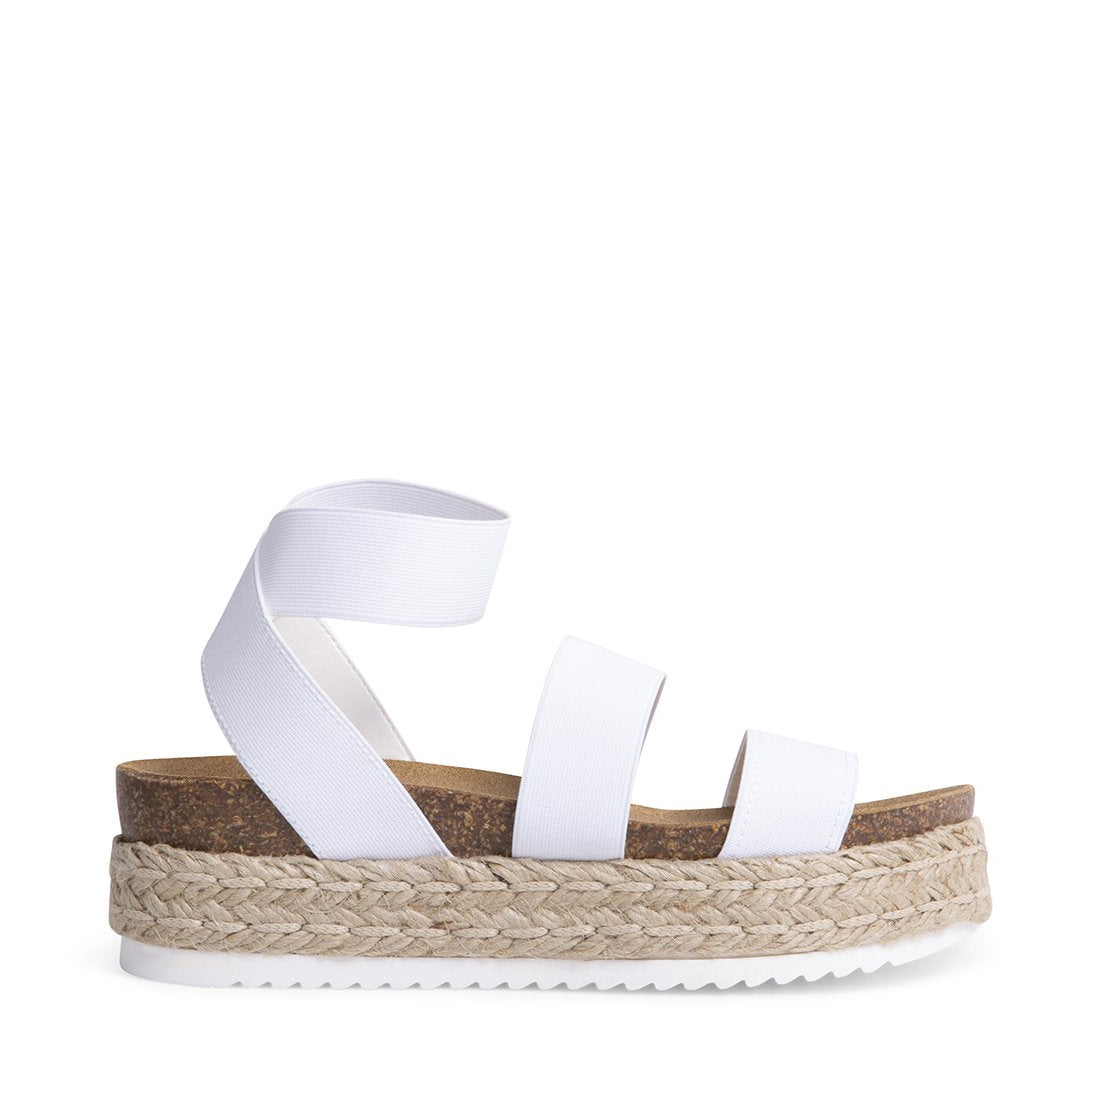 KIMMIE White Platform Sandals | Women's Designer Sandals – Steve Madden ...